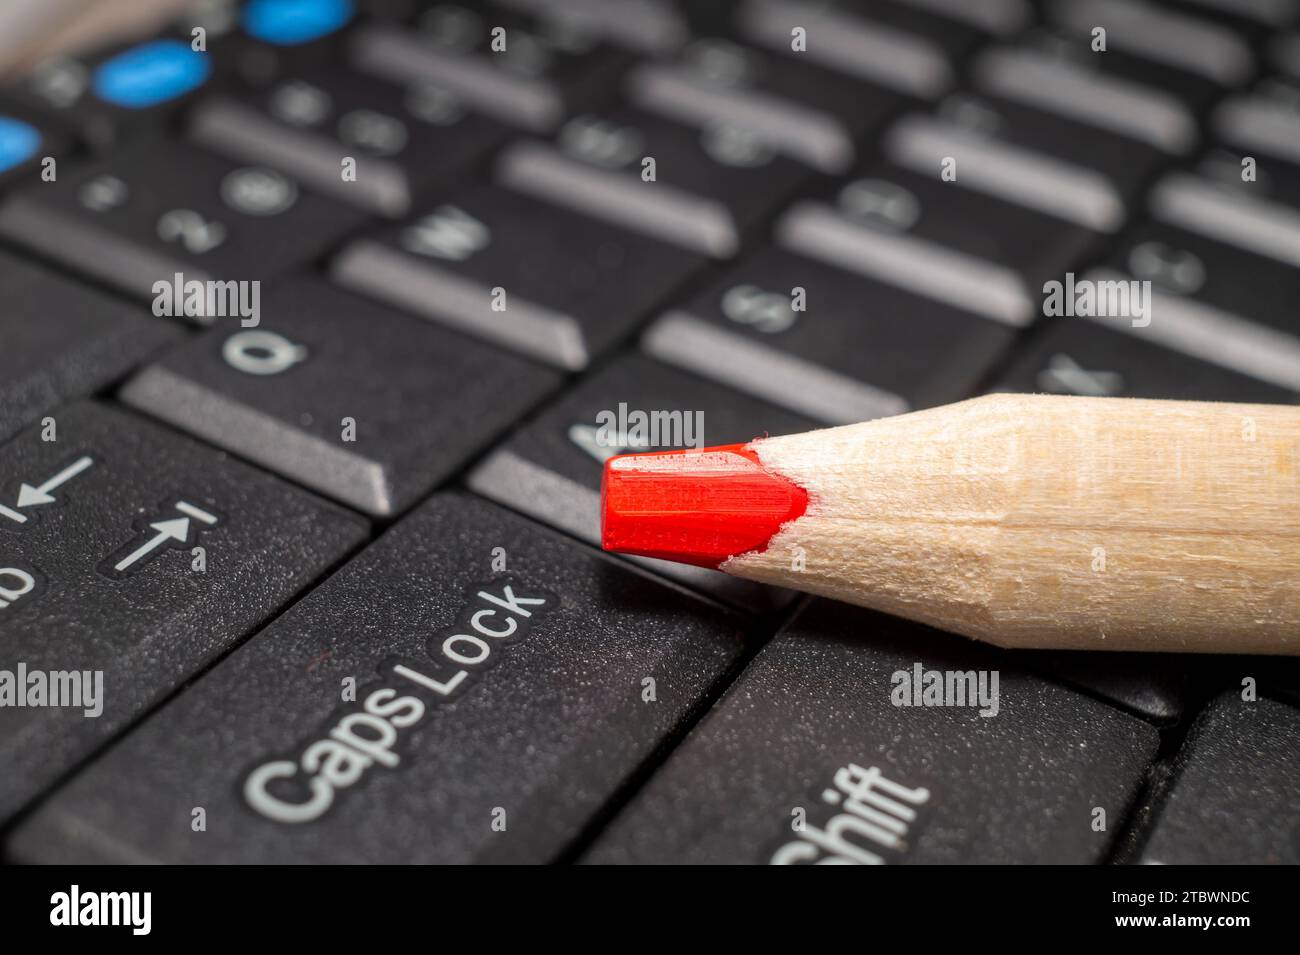 Matita rossa posta su una tastiera del computer, una vista ravvicinata Foto Stock